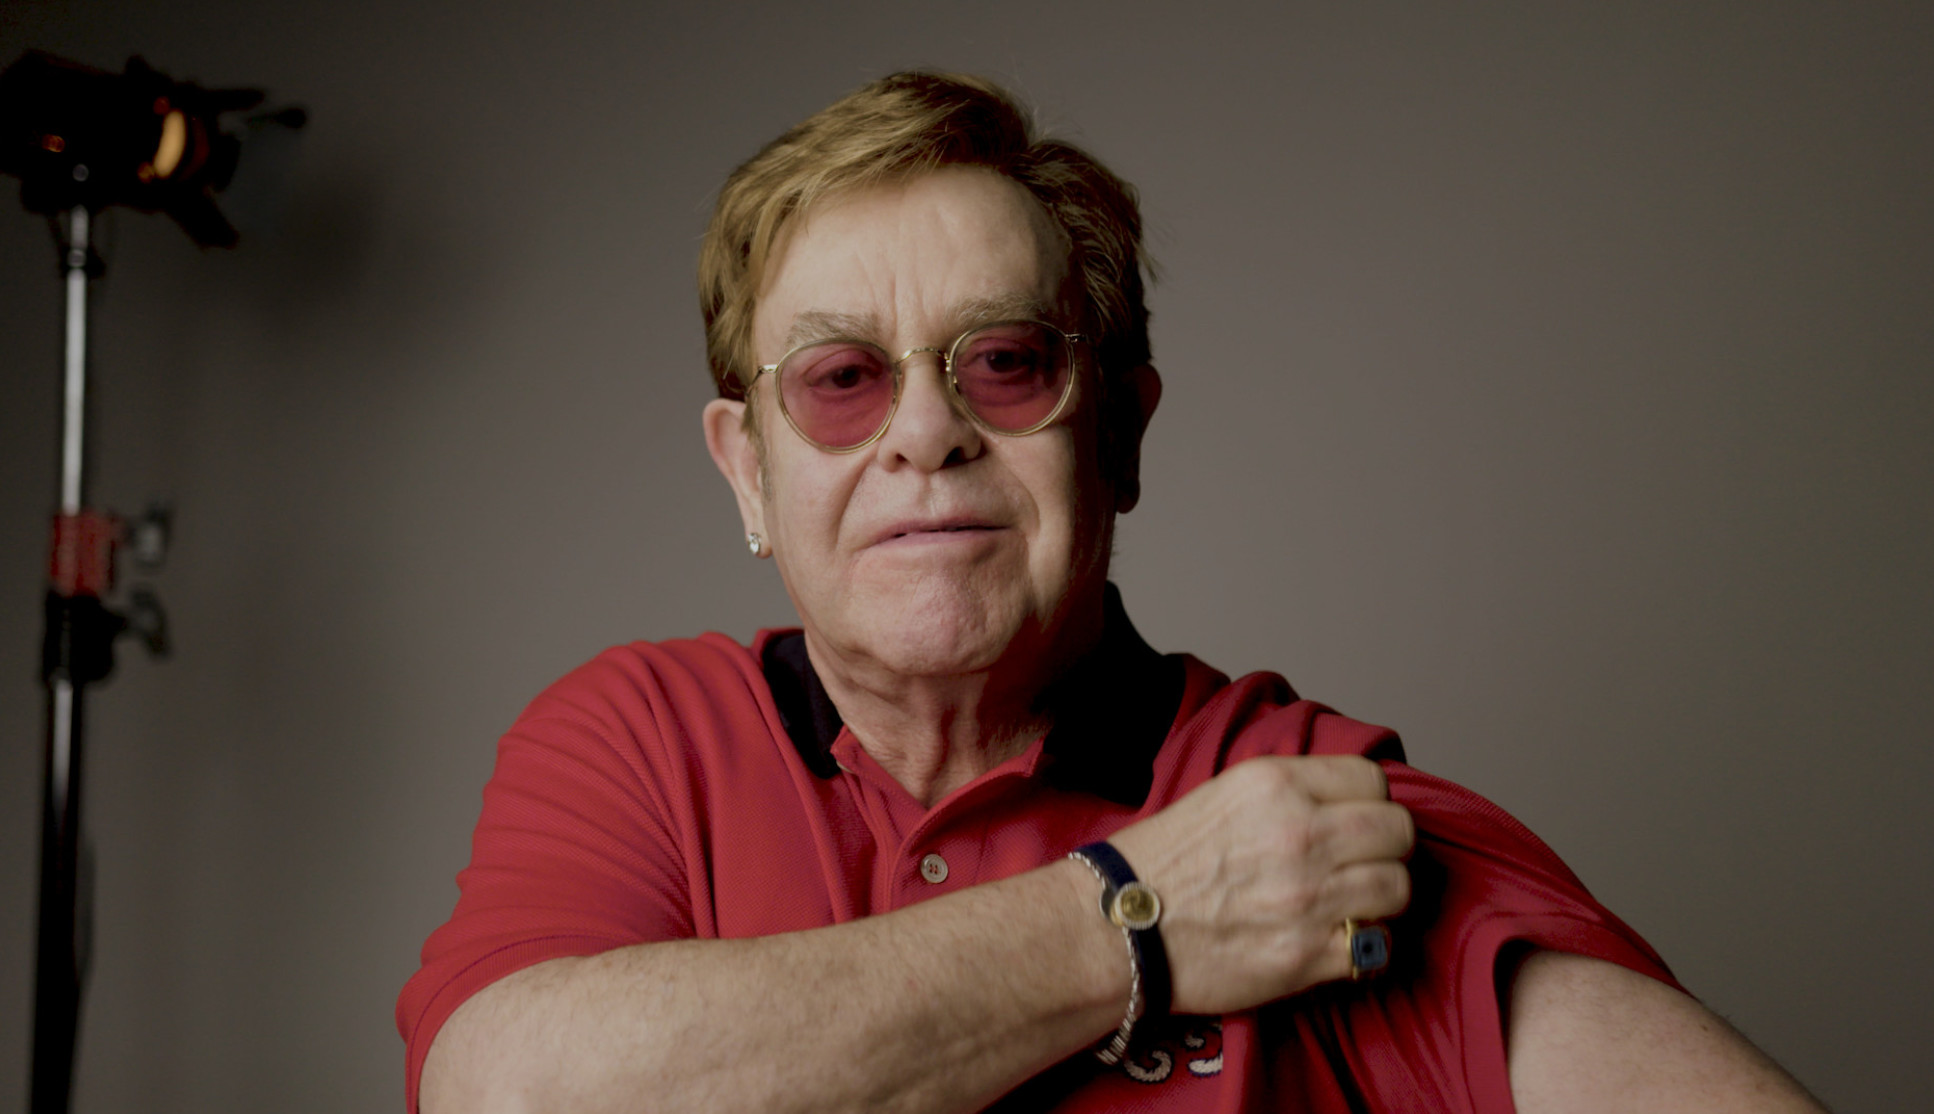 Αποτέλεσμα εικόνας για Elton john vaccine